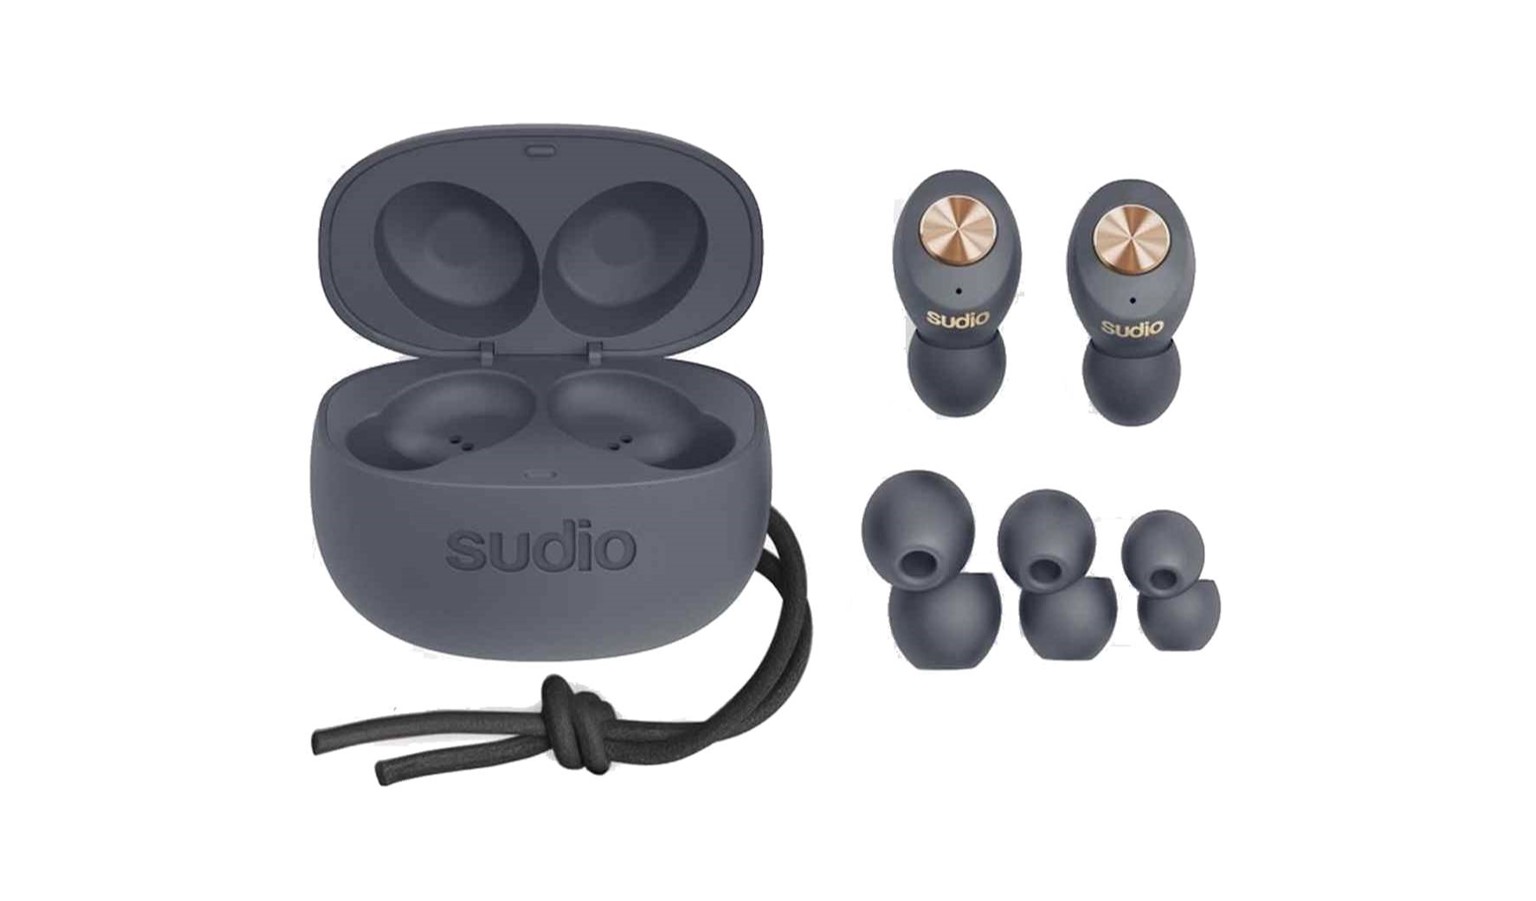 sudio wireless earphones